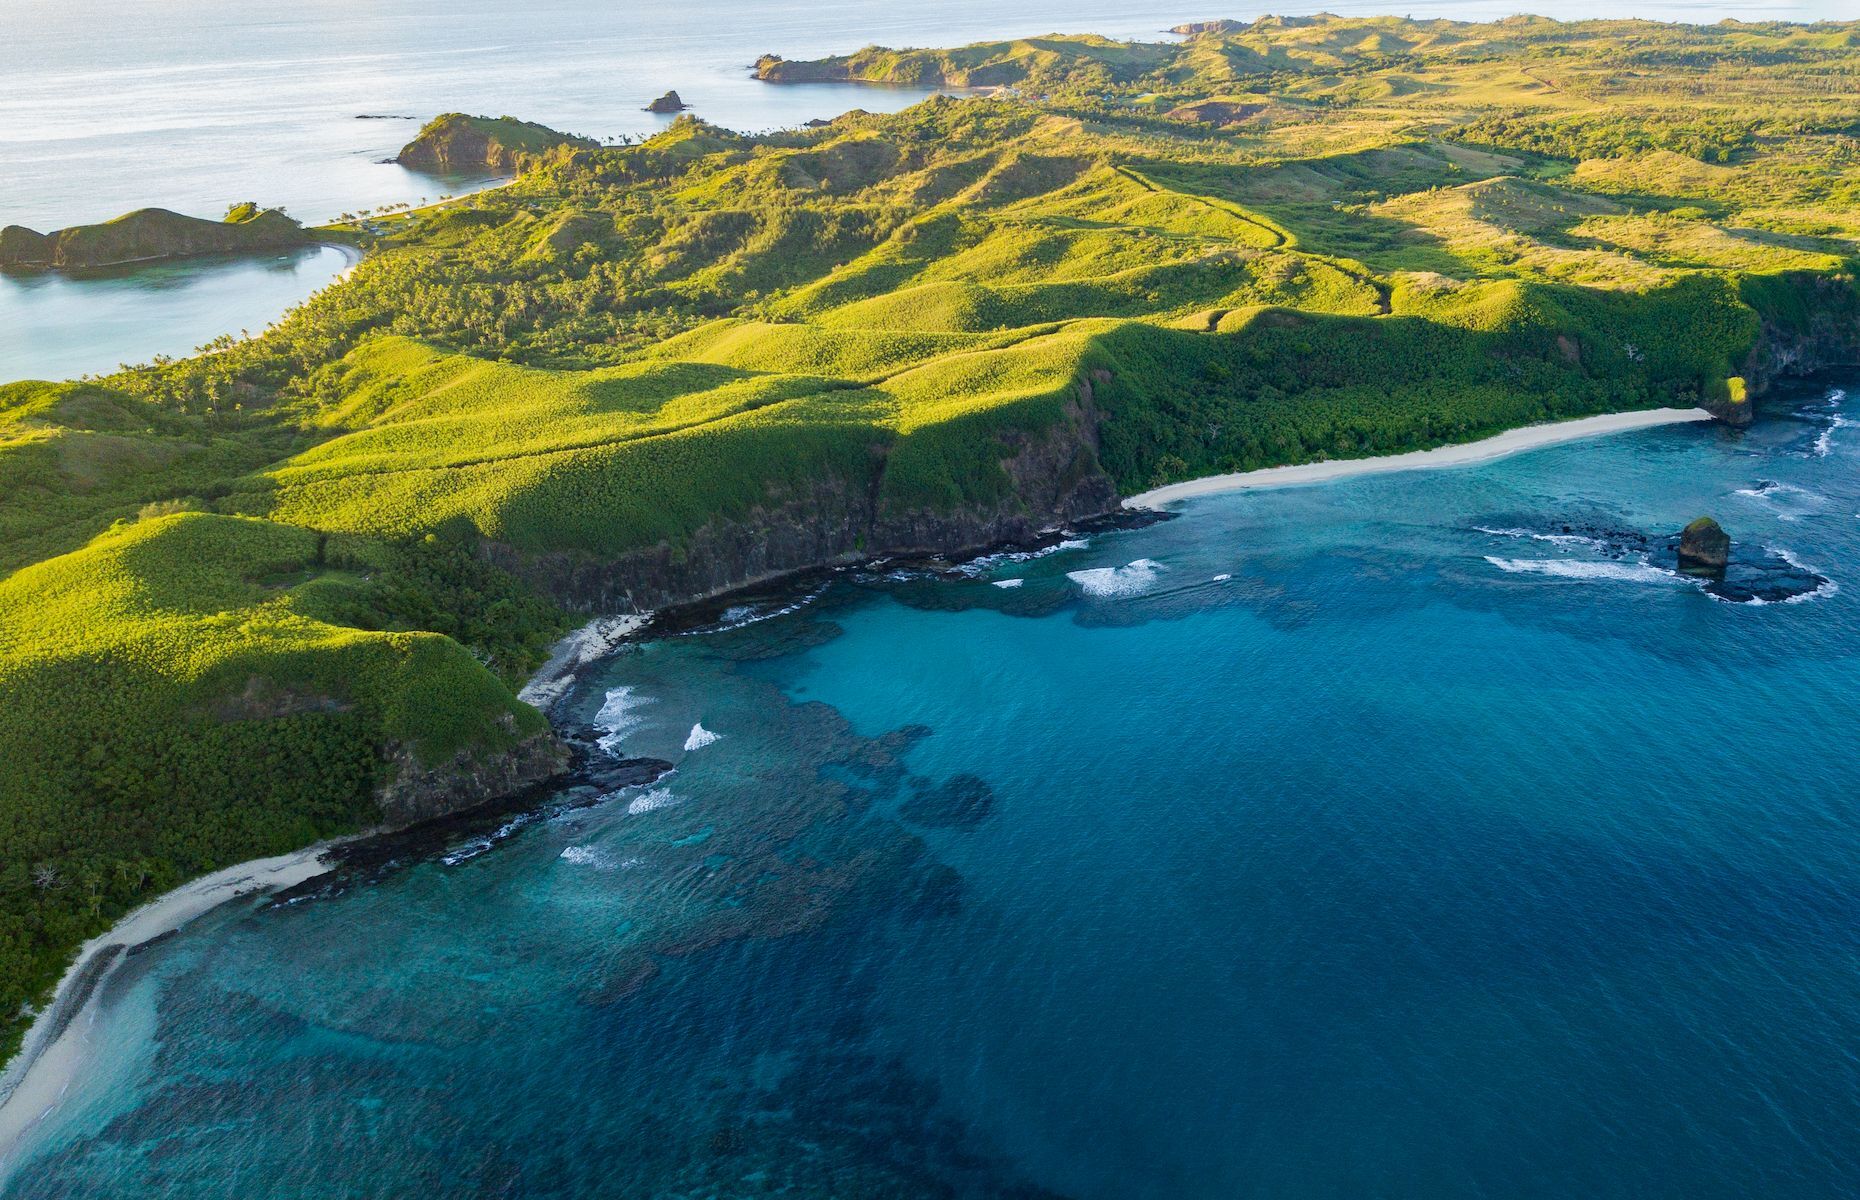 <p>Si les îles Fidji vous ont toujours fait rêver et que vous recherchez les endroits isolés, vous devriez considérer un séjour au cœur des <a href="https://www.fiji.travel/places-to-go/yasawa-islands">îles Yasawa</a>. Au-delà de ses lagons cristallins, vous pourrez explorer des grottes marines mystérieuses comme celle de Sawa-i-Lau, où vous vous sentirez comme dans une piscine naturelle secrète. Étant à l’écart des circuits touristiques populaires, l’archipel paradisiaque des Yasawa charmera assurément les voyageurs à la recherche de détente par la sérénité de ses lieux.</p>